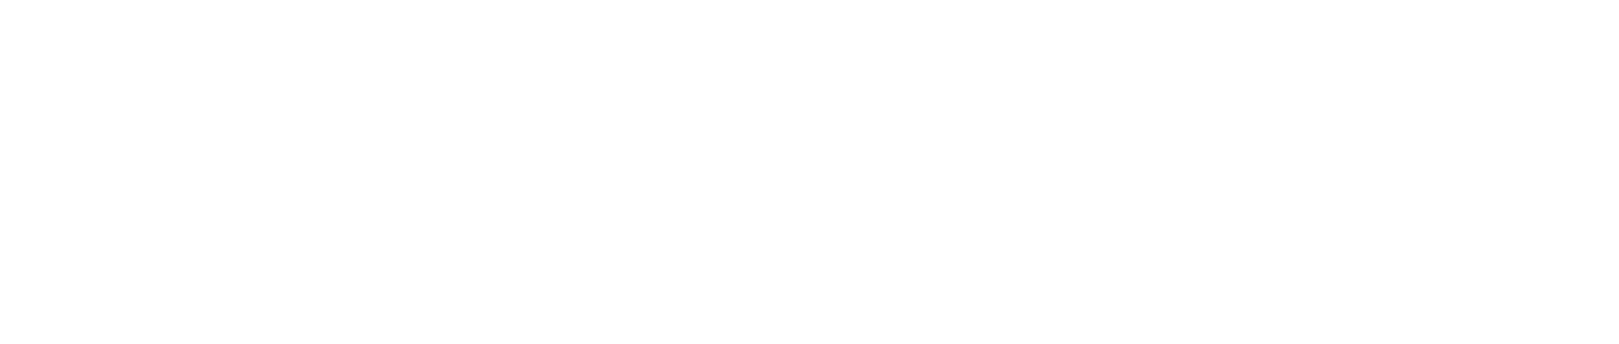 Moody's Logo groß für dunkle Hintergründe (transparentes PNG)